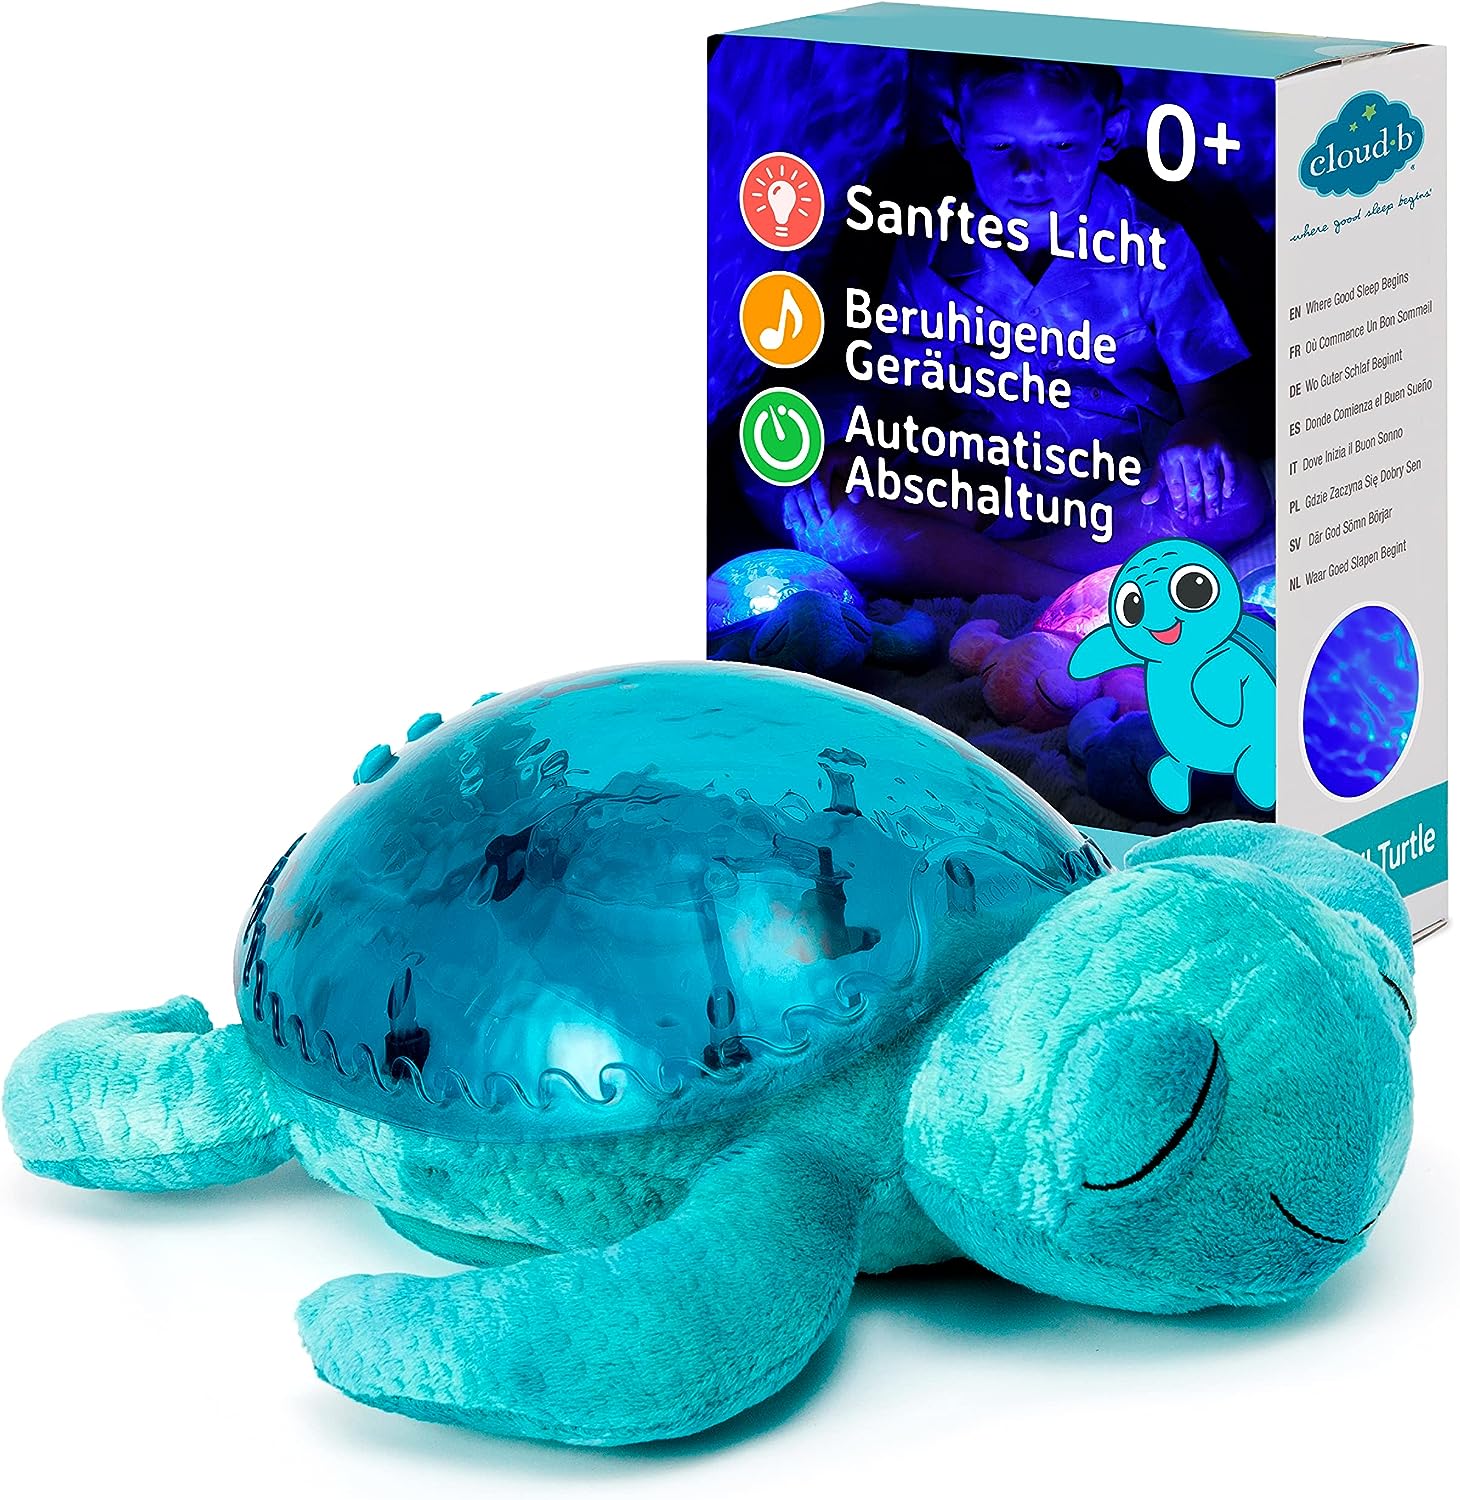 Tranquil-Turtle-Aqua-berlindeluxe-schildkroete-box-blau